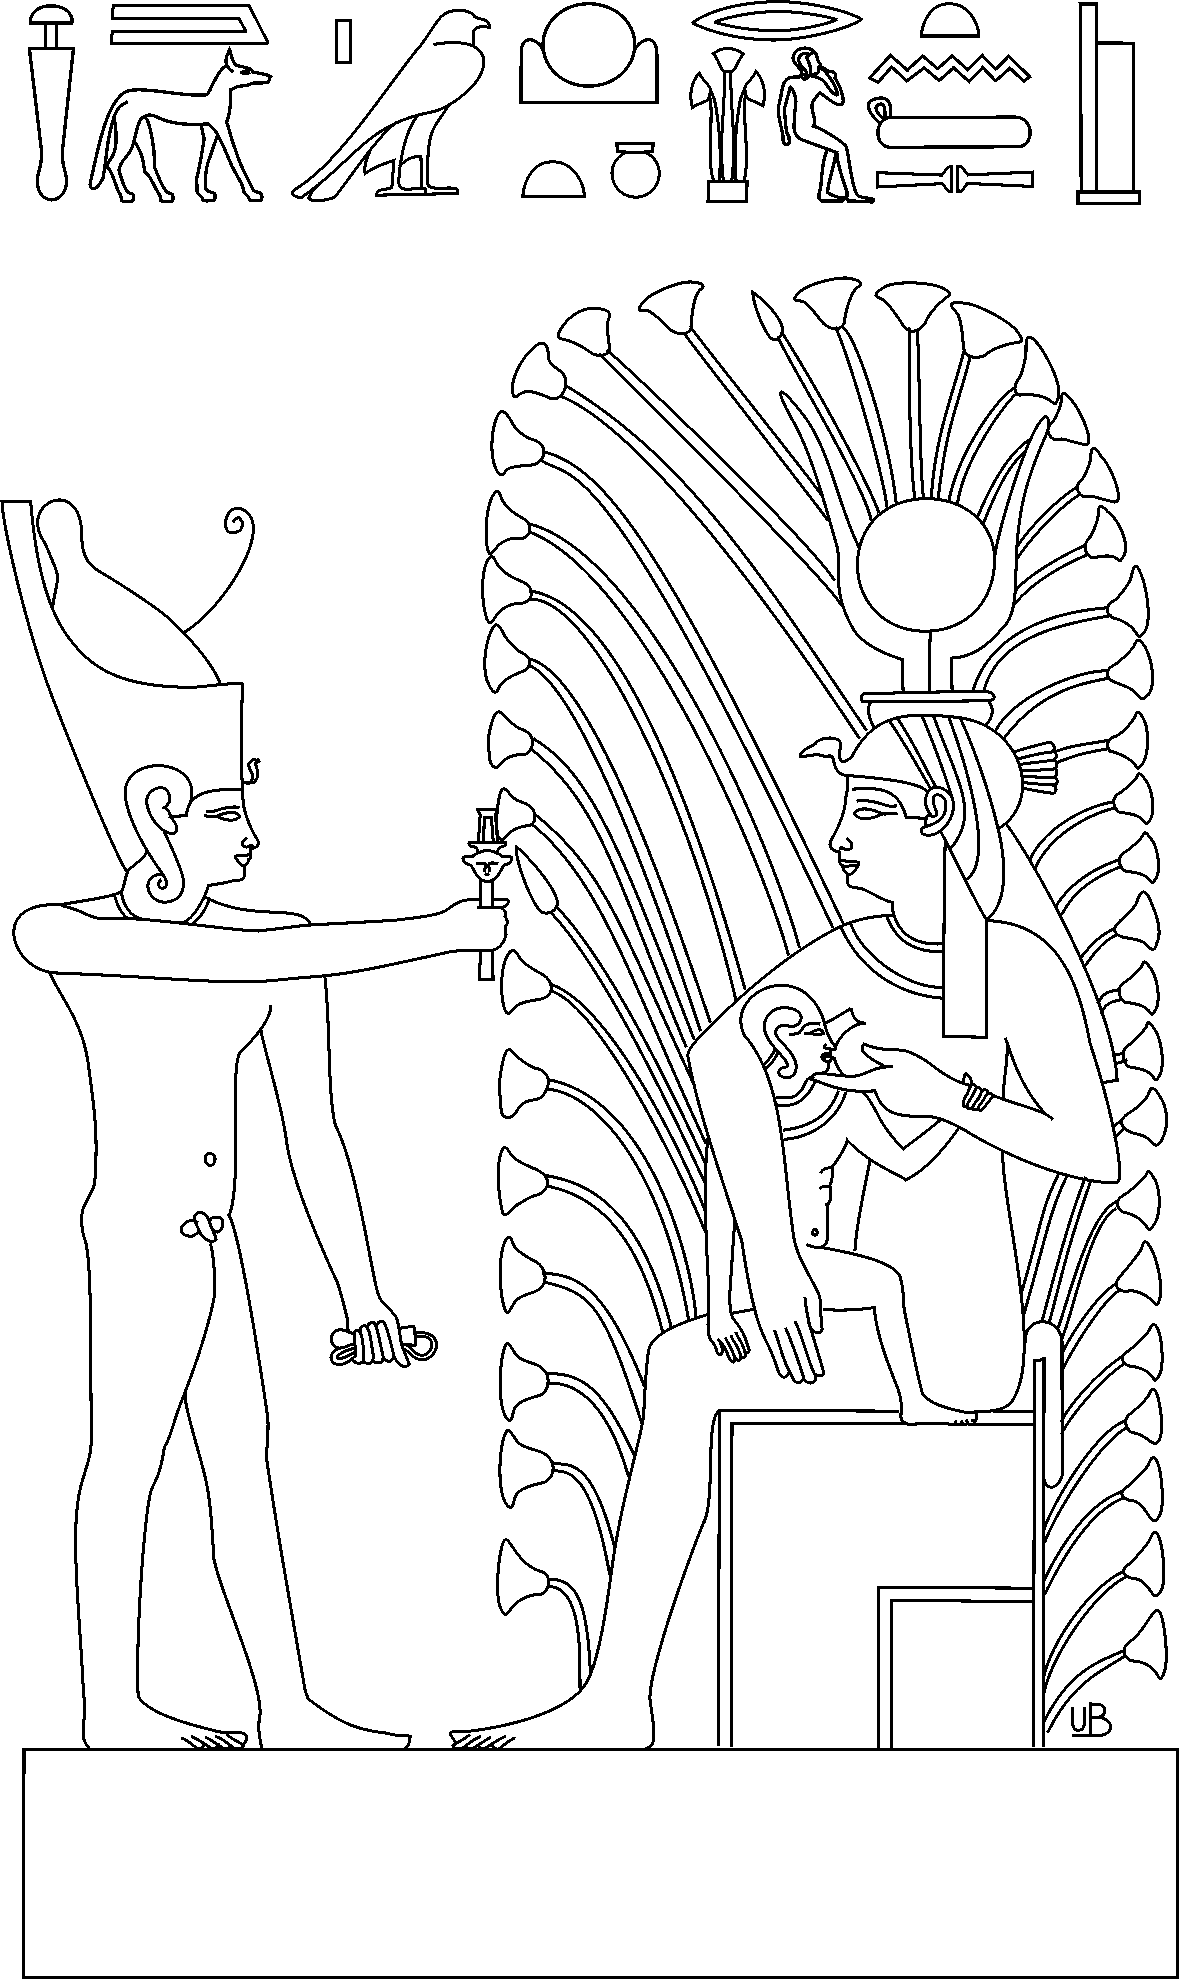 Mammisi Hathor links mit Text 300dpi_Dateiformat